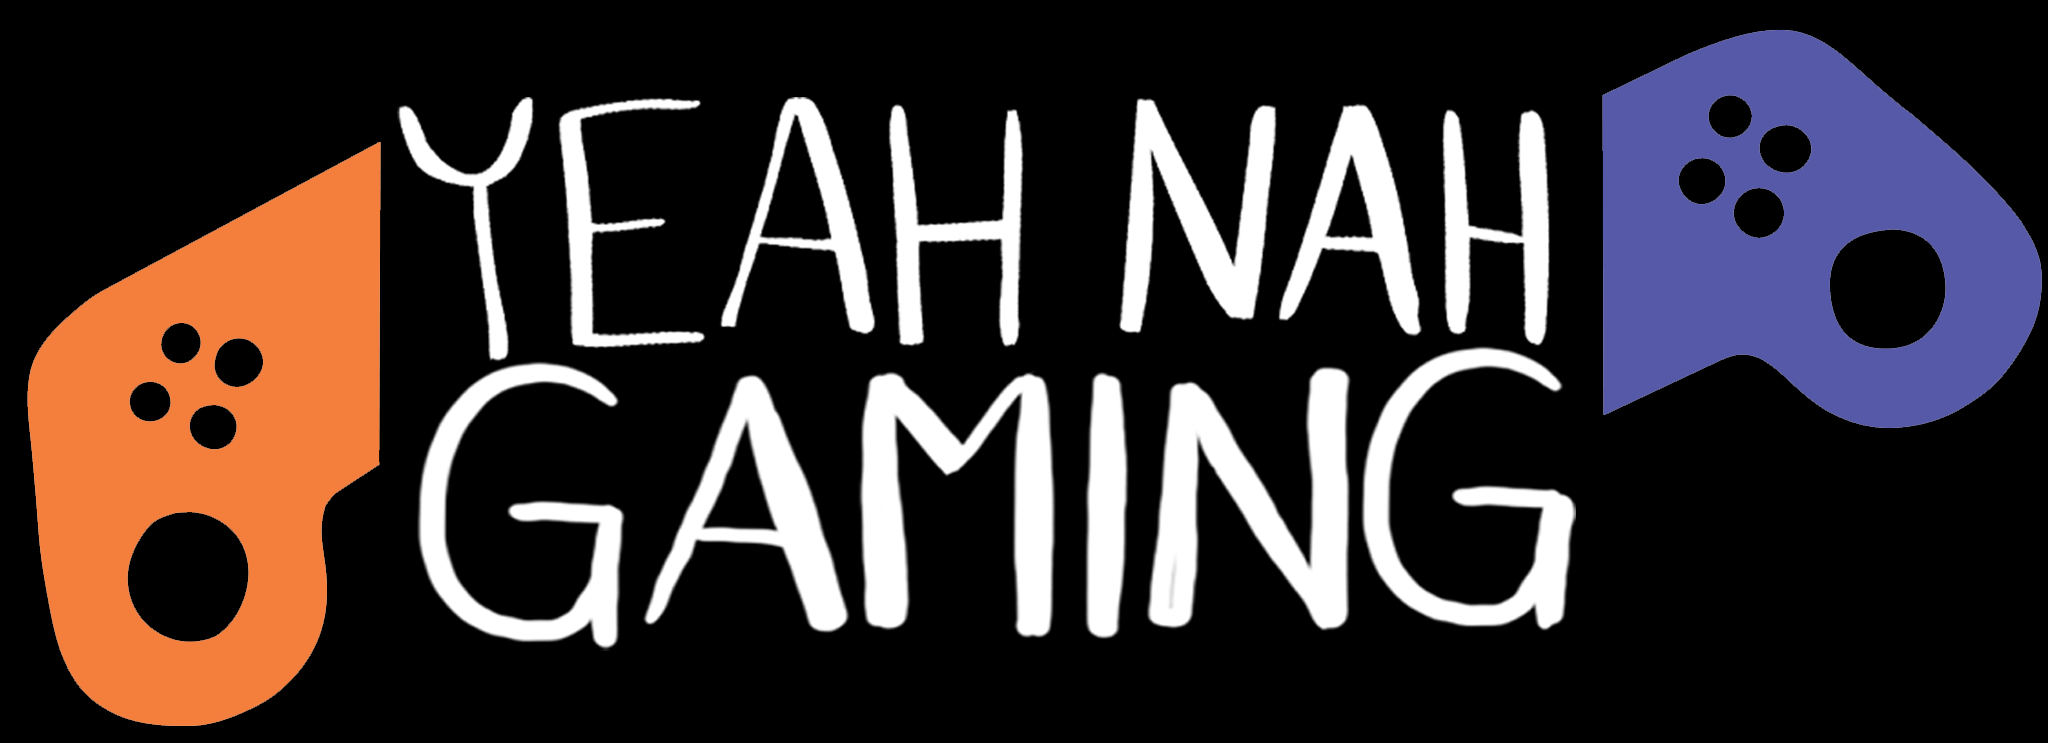 Yeah Nah Gaming